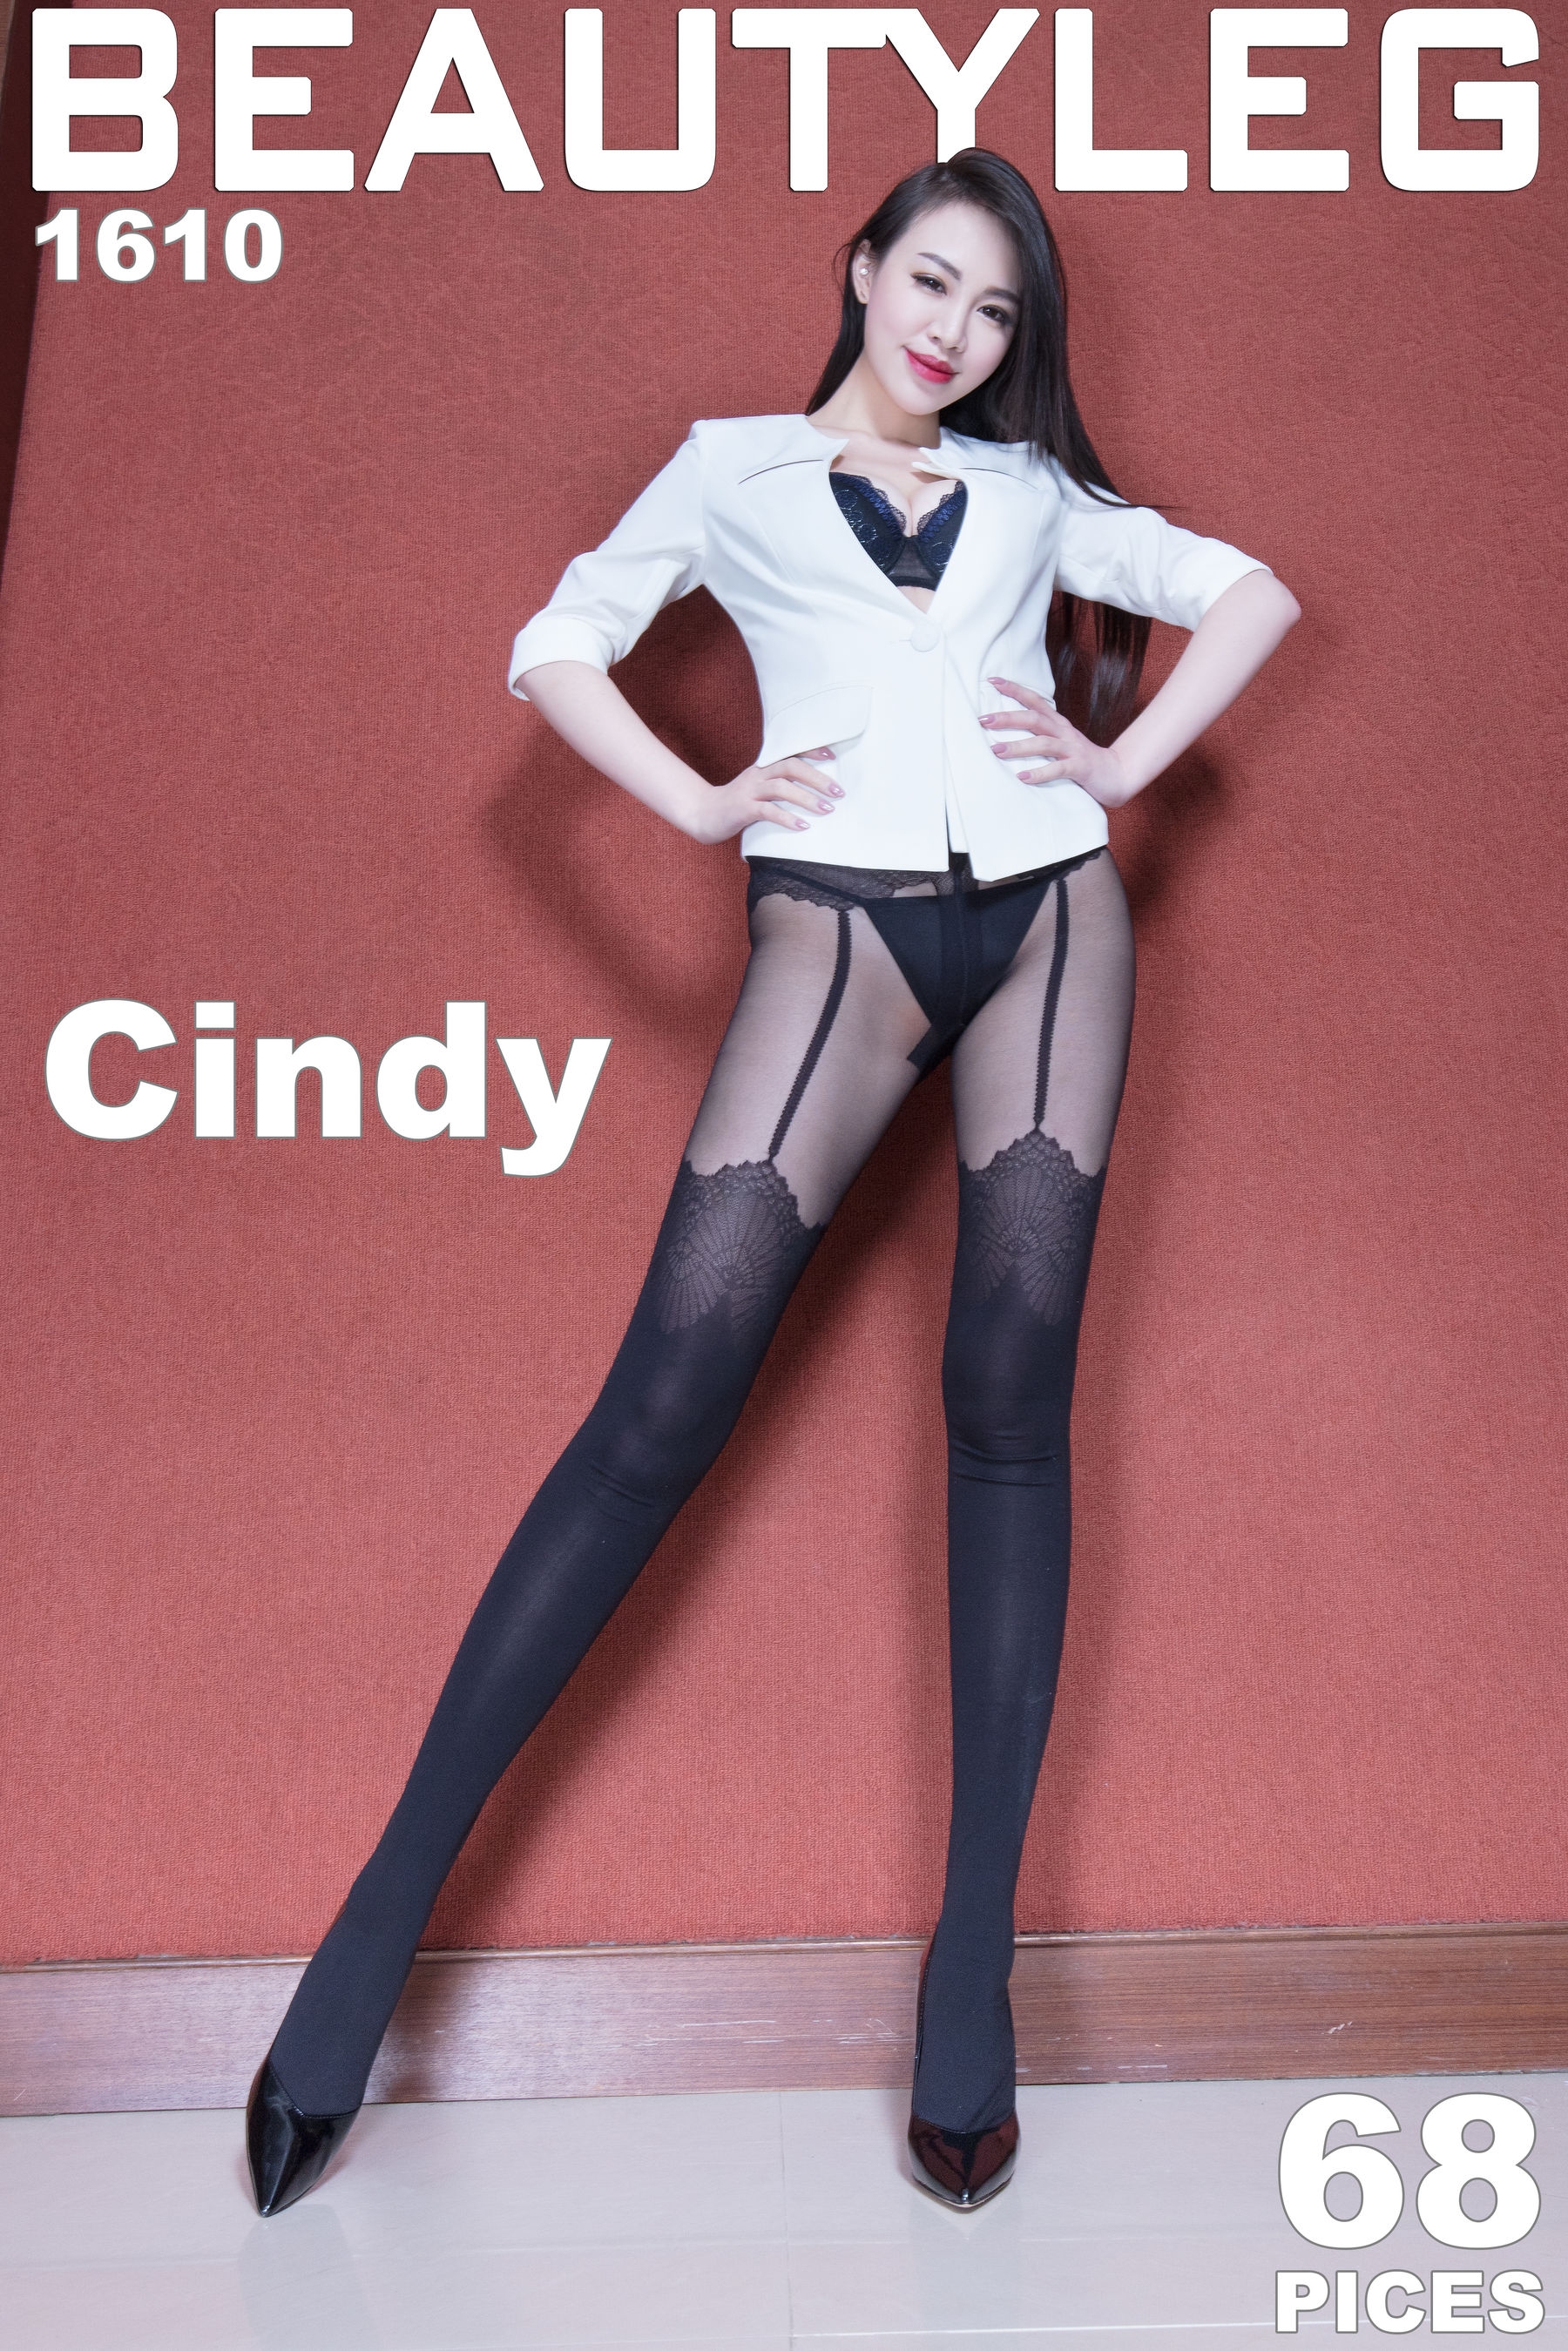 腿模Cindy《黑丝美腿+肉丝高跟》 [Beautyleg] No.1610 